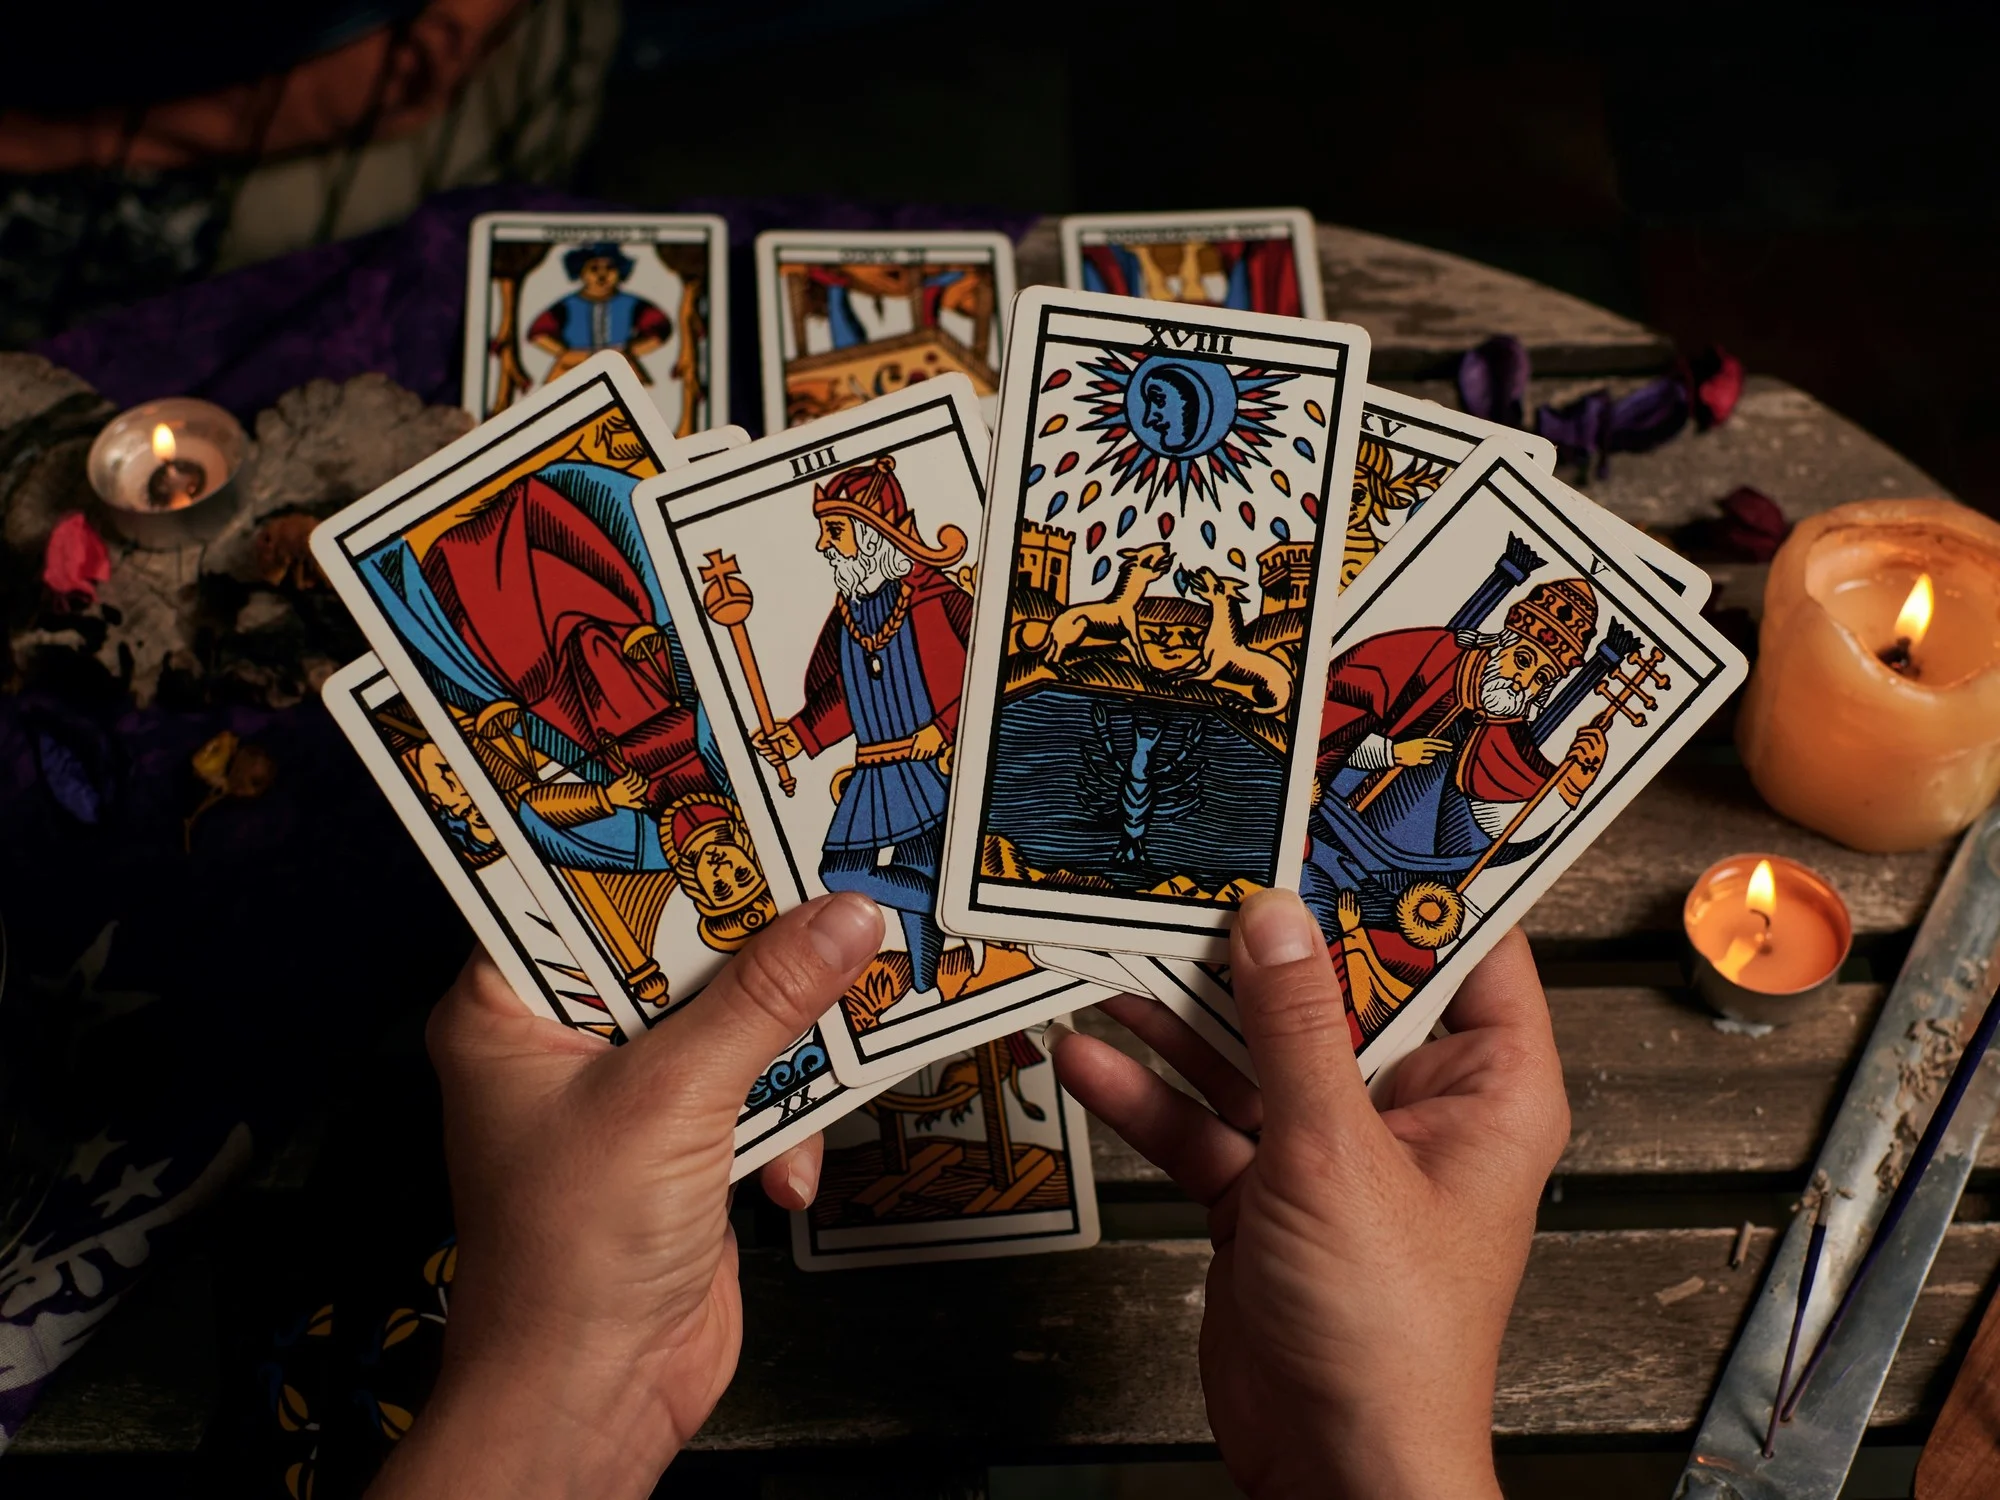  Cómo repartir y leer las cartas del tarot
 